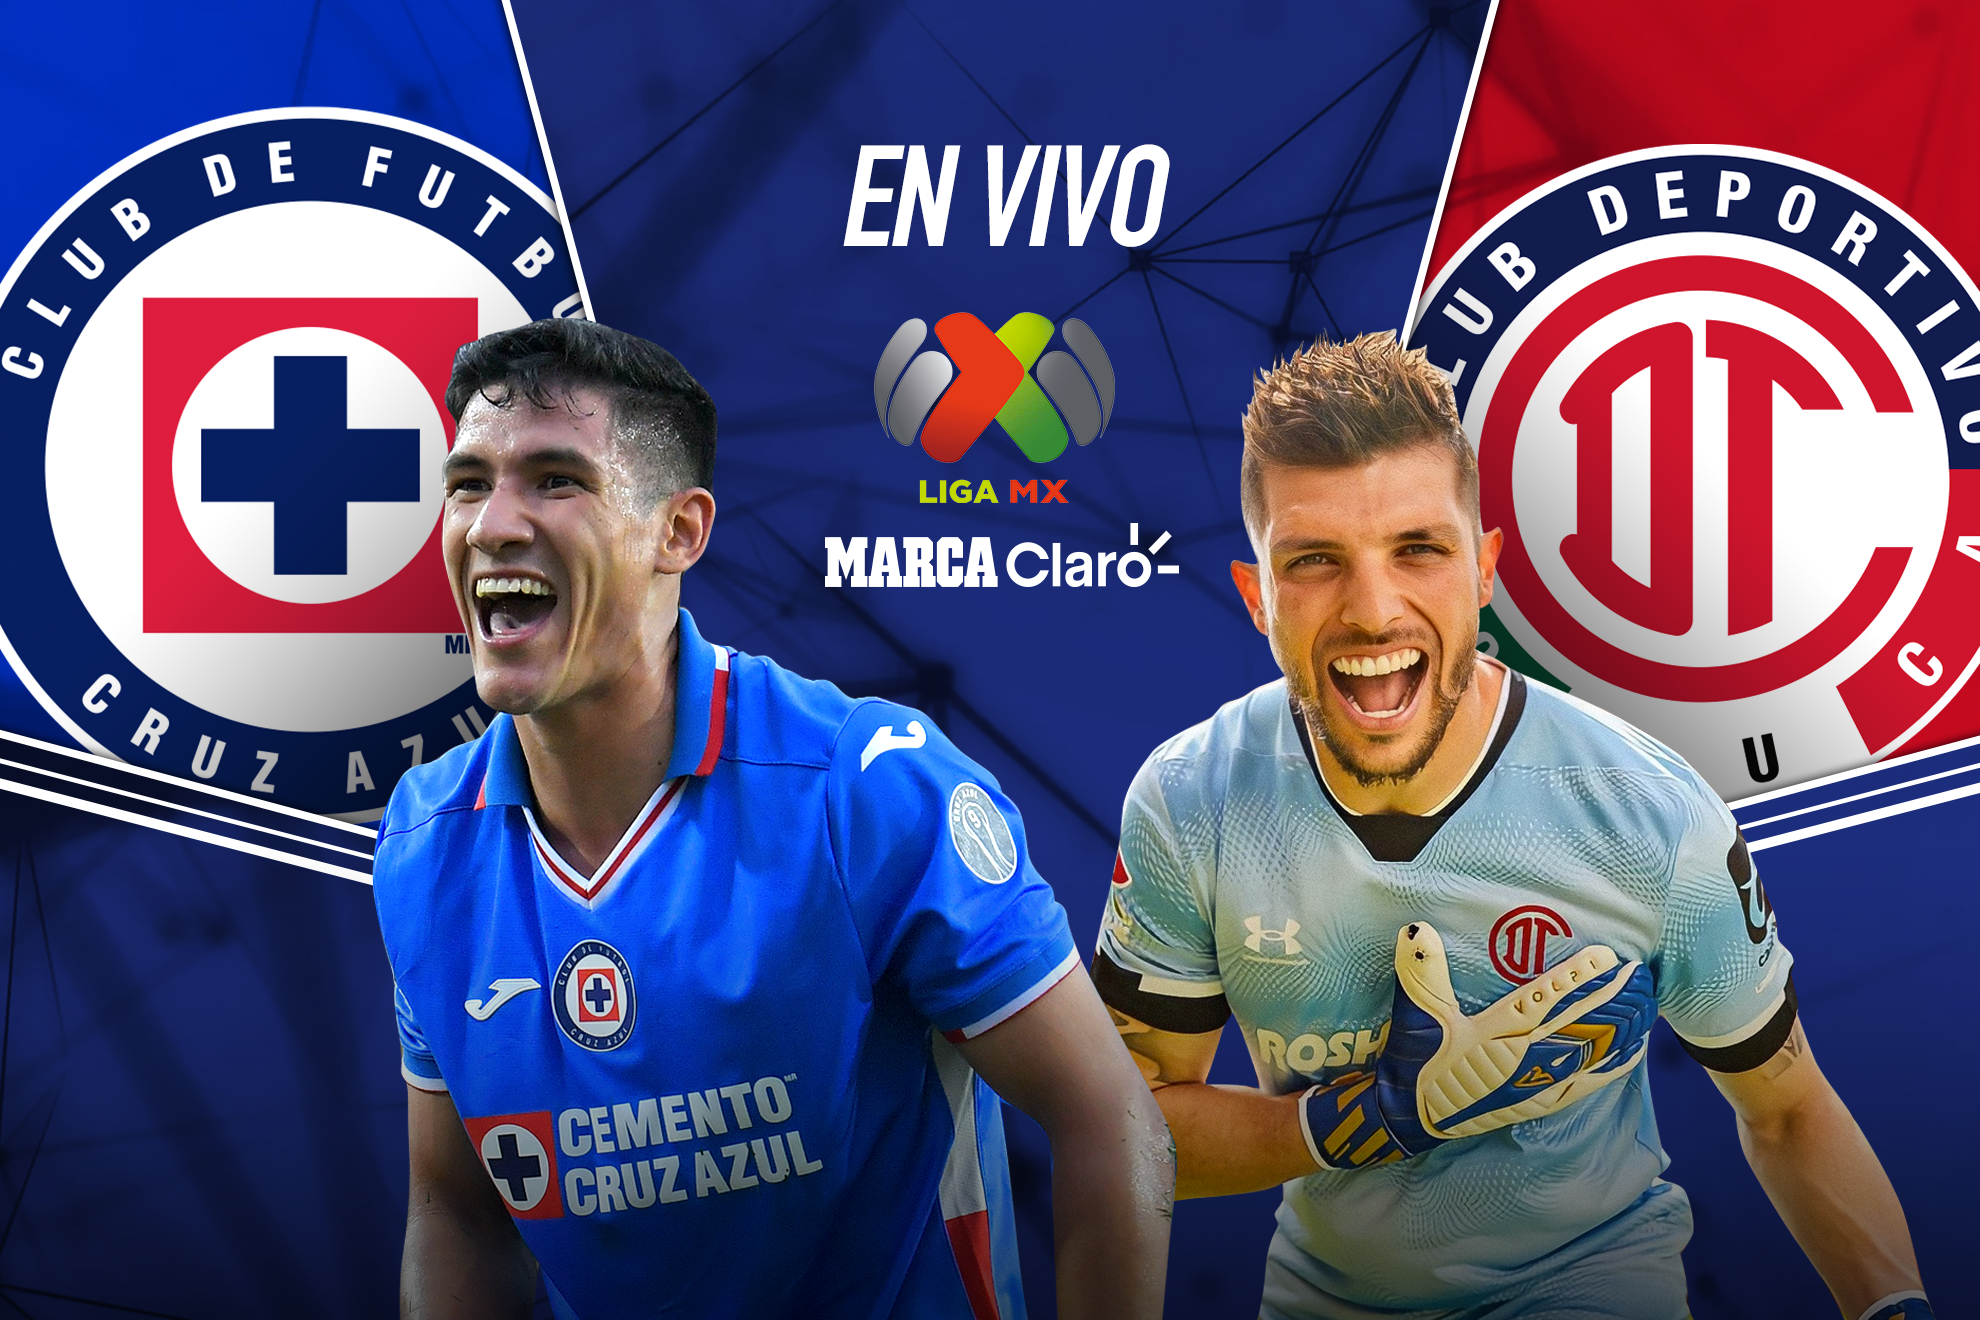 Cruz Azul vs Toluca, en vivo el partido de la jornada 8 de la Liga MX | MARCA Claro